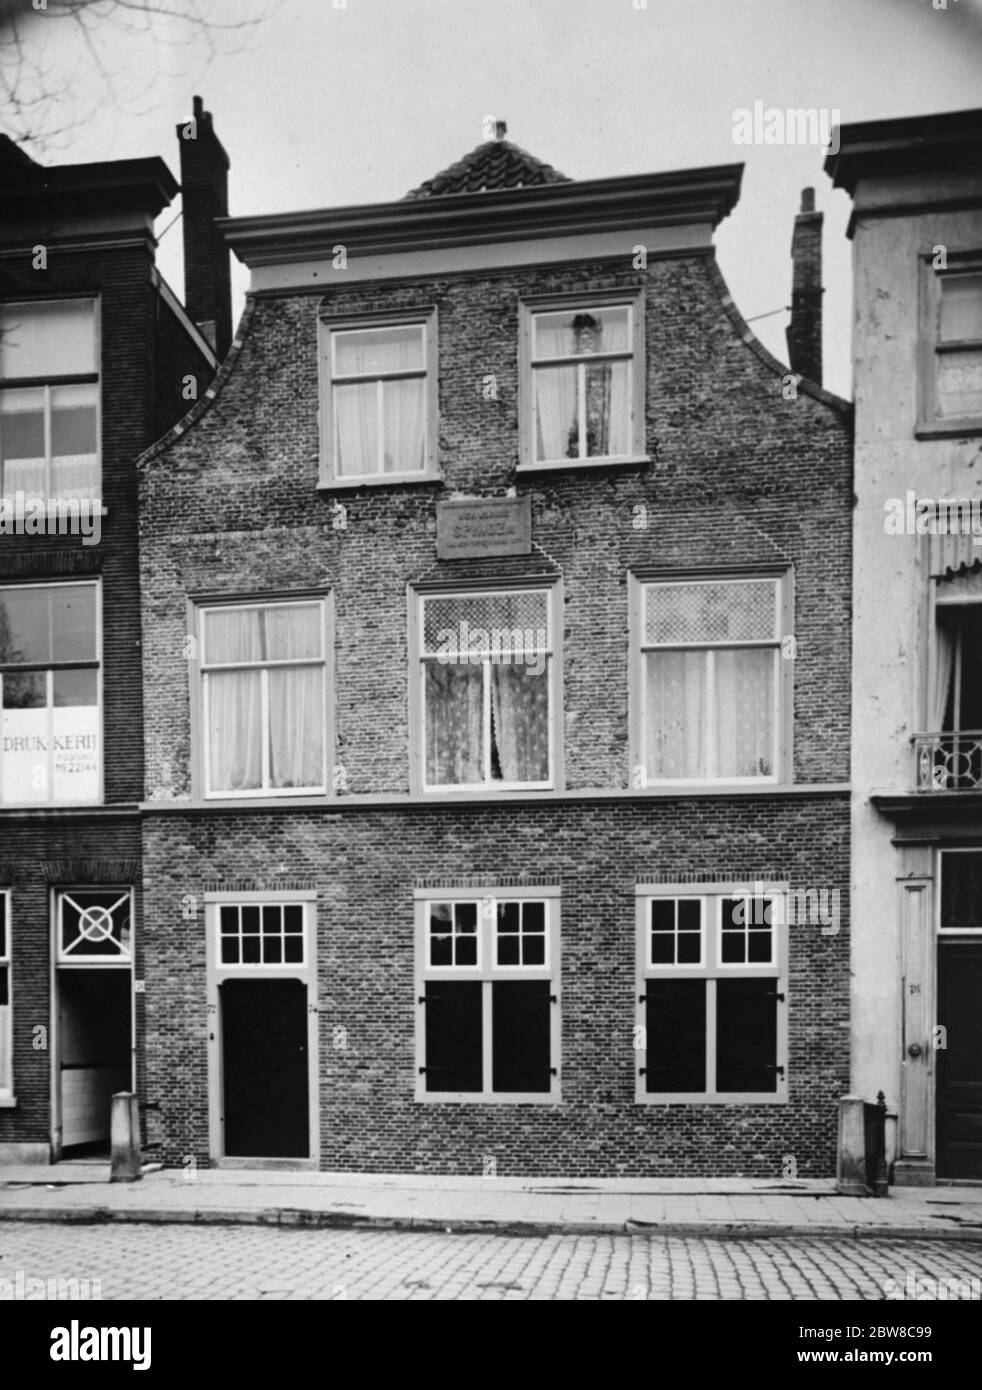 Britisches Komitee zum Kauf Haus des großen jüdischen Philosophen. Ein britisches Spinoza-Komitee wurde für einen Fonds gebildet, um das Haus in Den Haag auszustatten und zu kaufen (auf dem Foto gesehen), in dem Spinoza, der große jüdische Philosoph, lebte, als Treffpunkt für Gelehrte. März 1927 Stockfoto